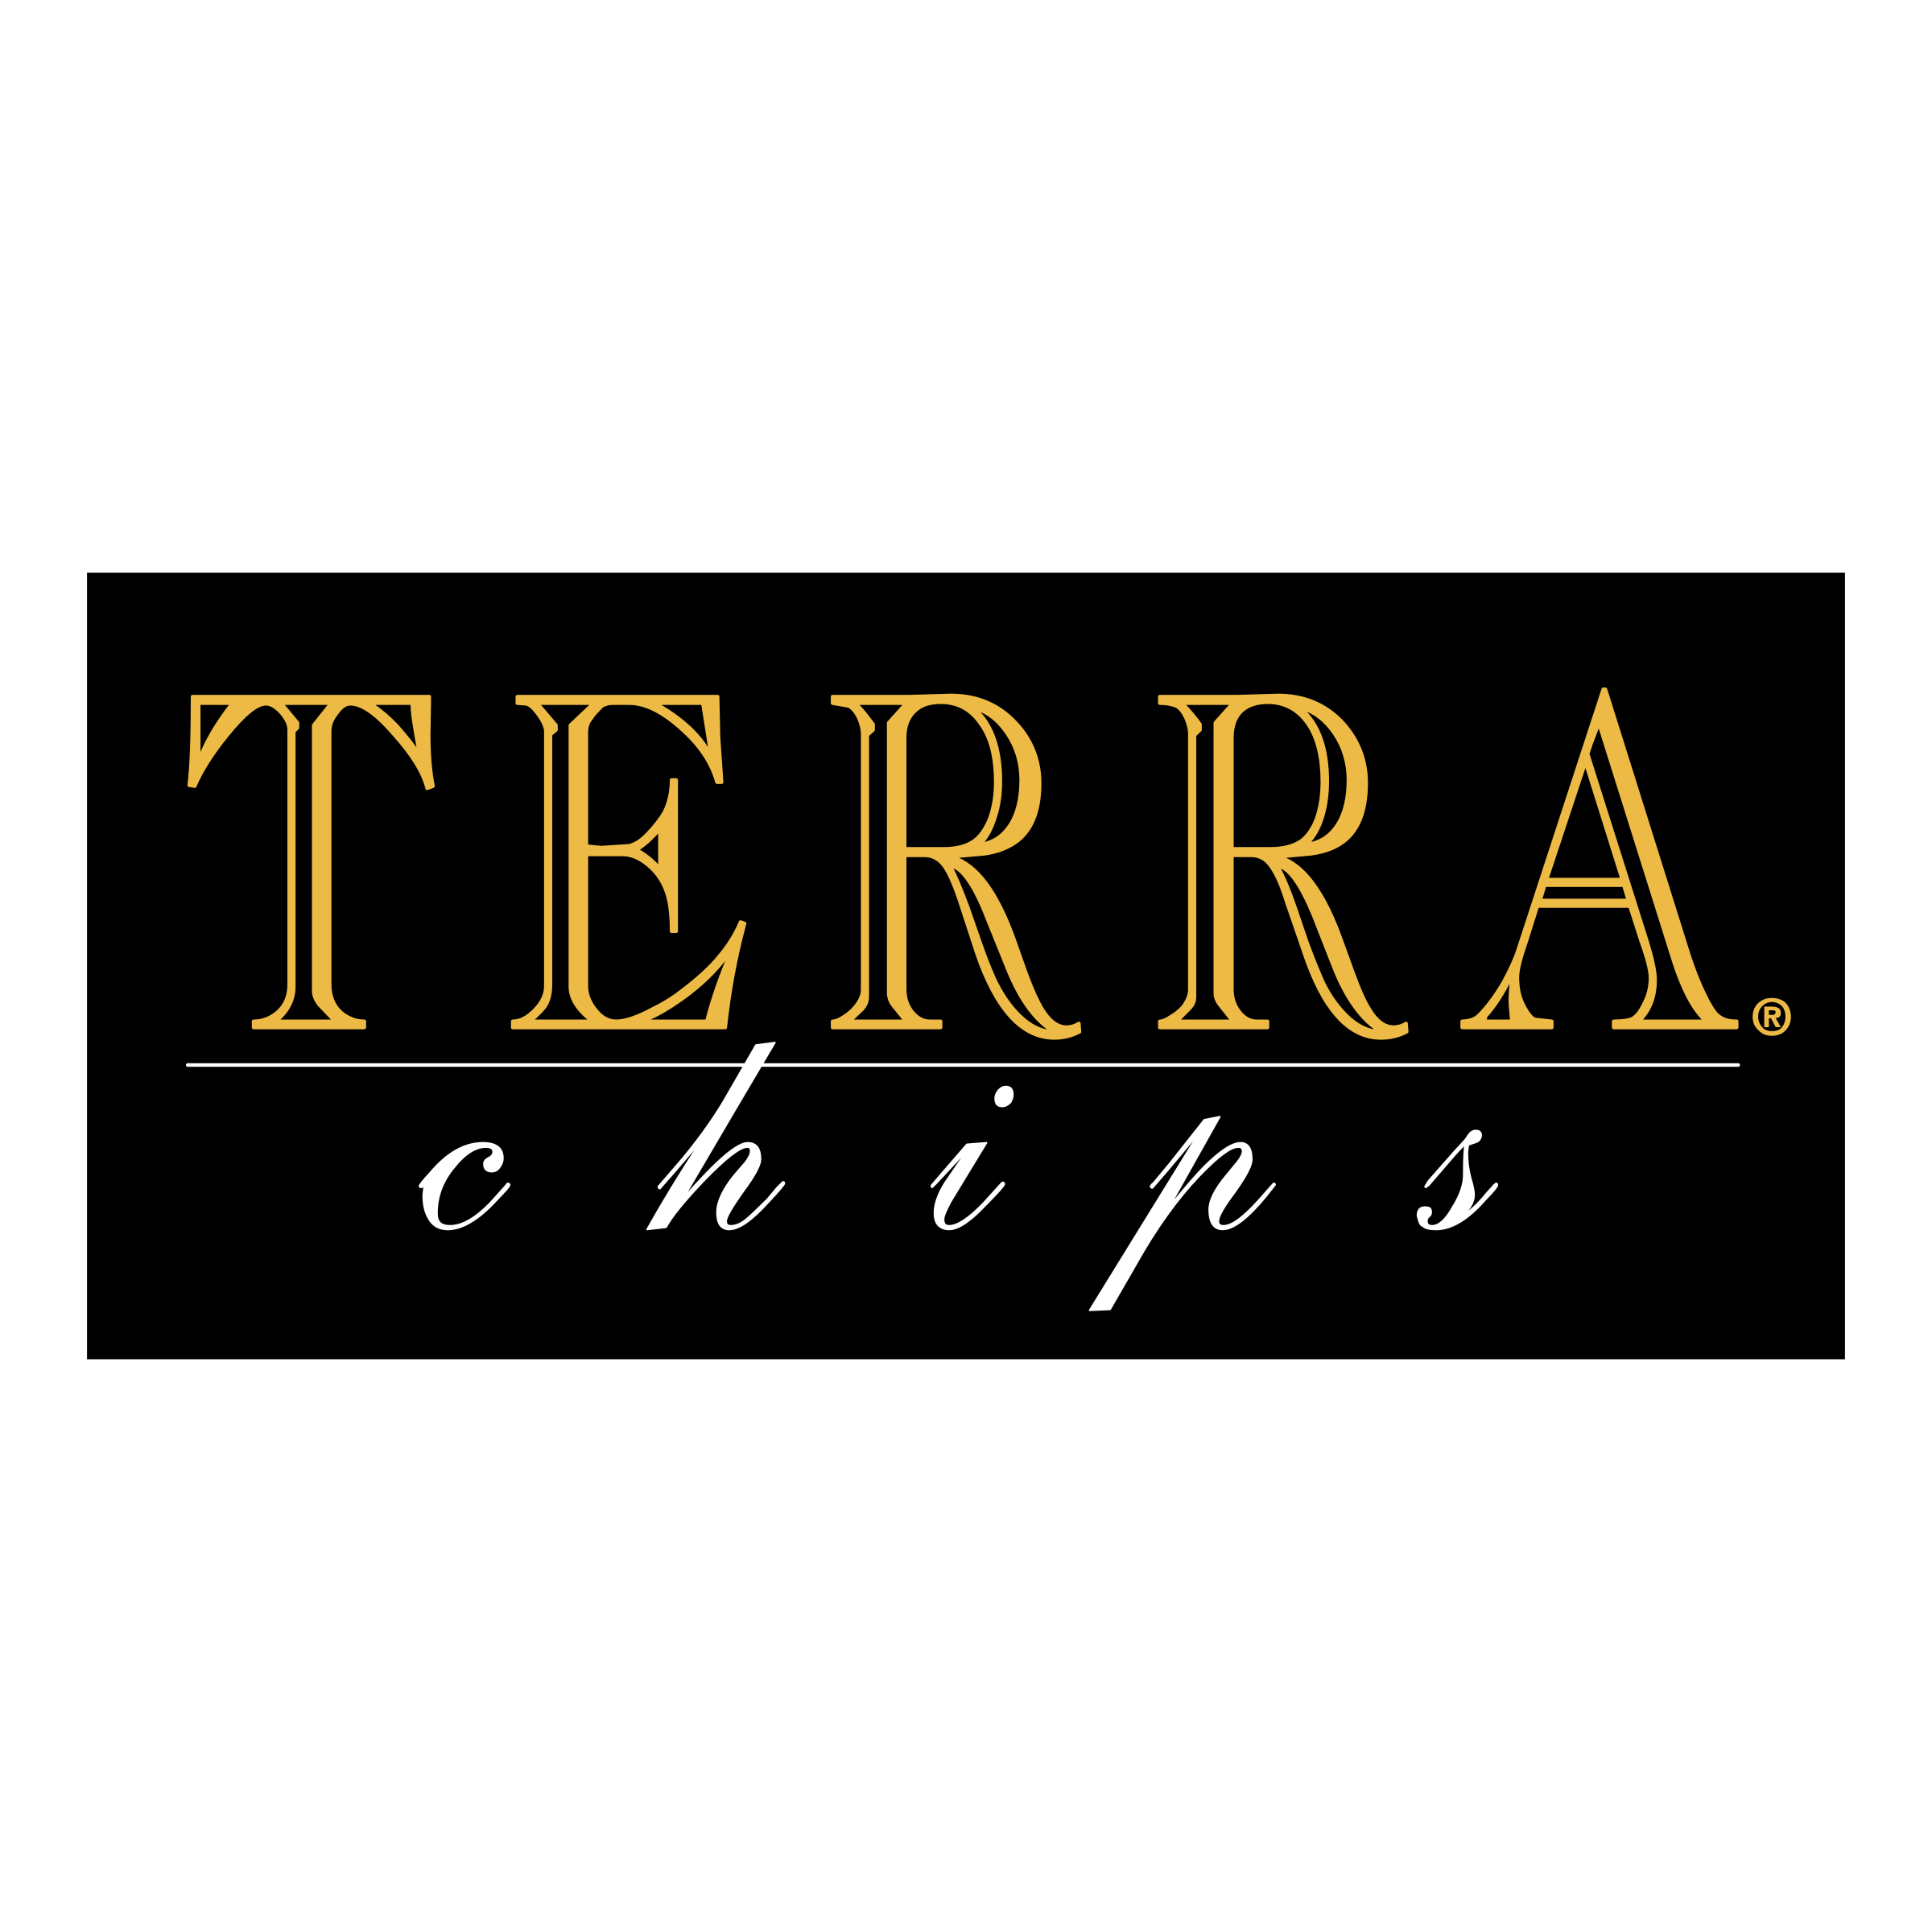 terra-chips-logo.png